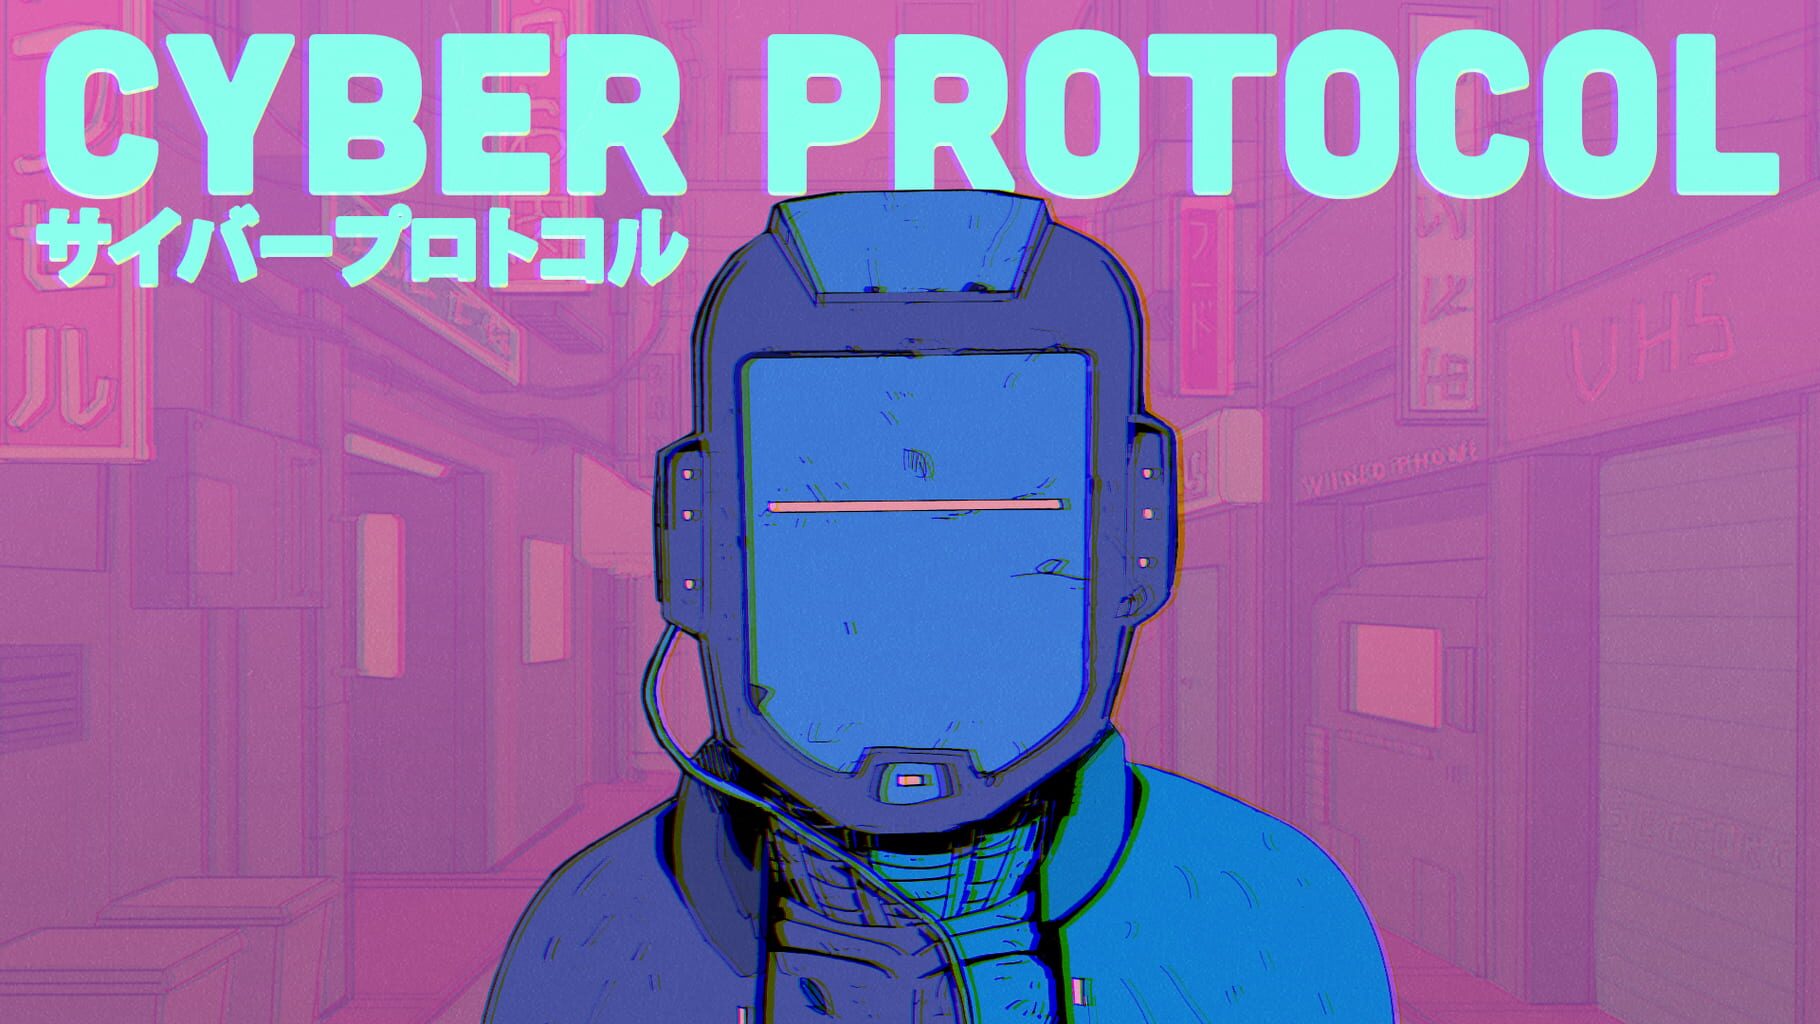 Arte - Cyber Protocol